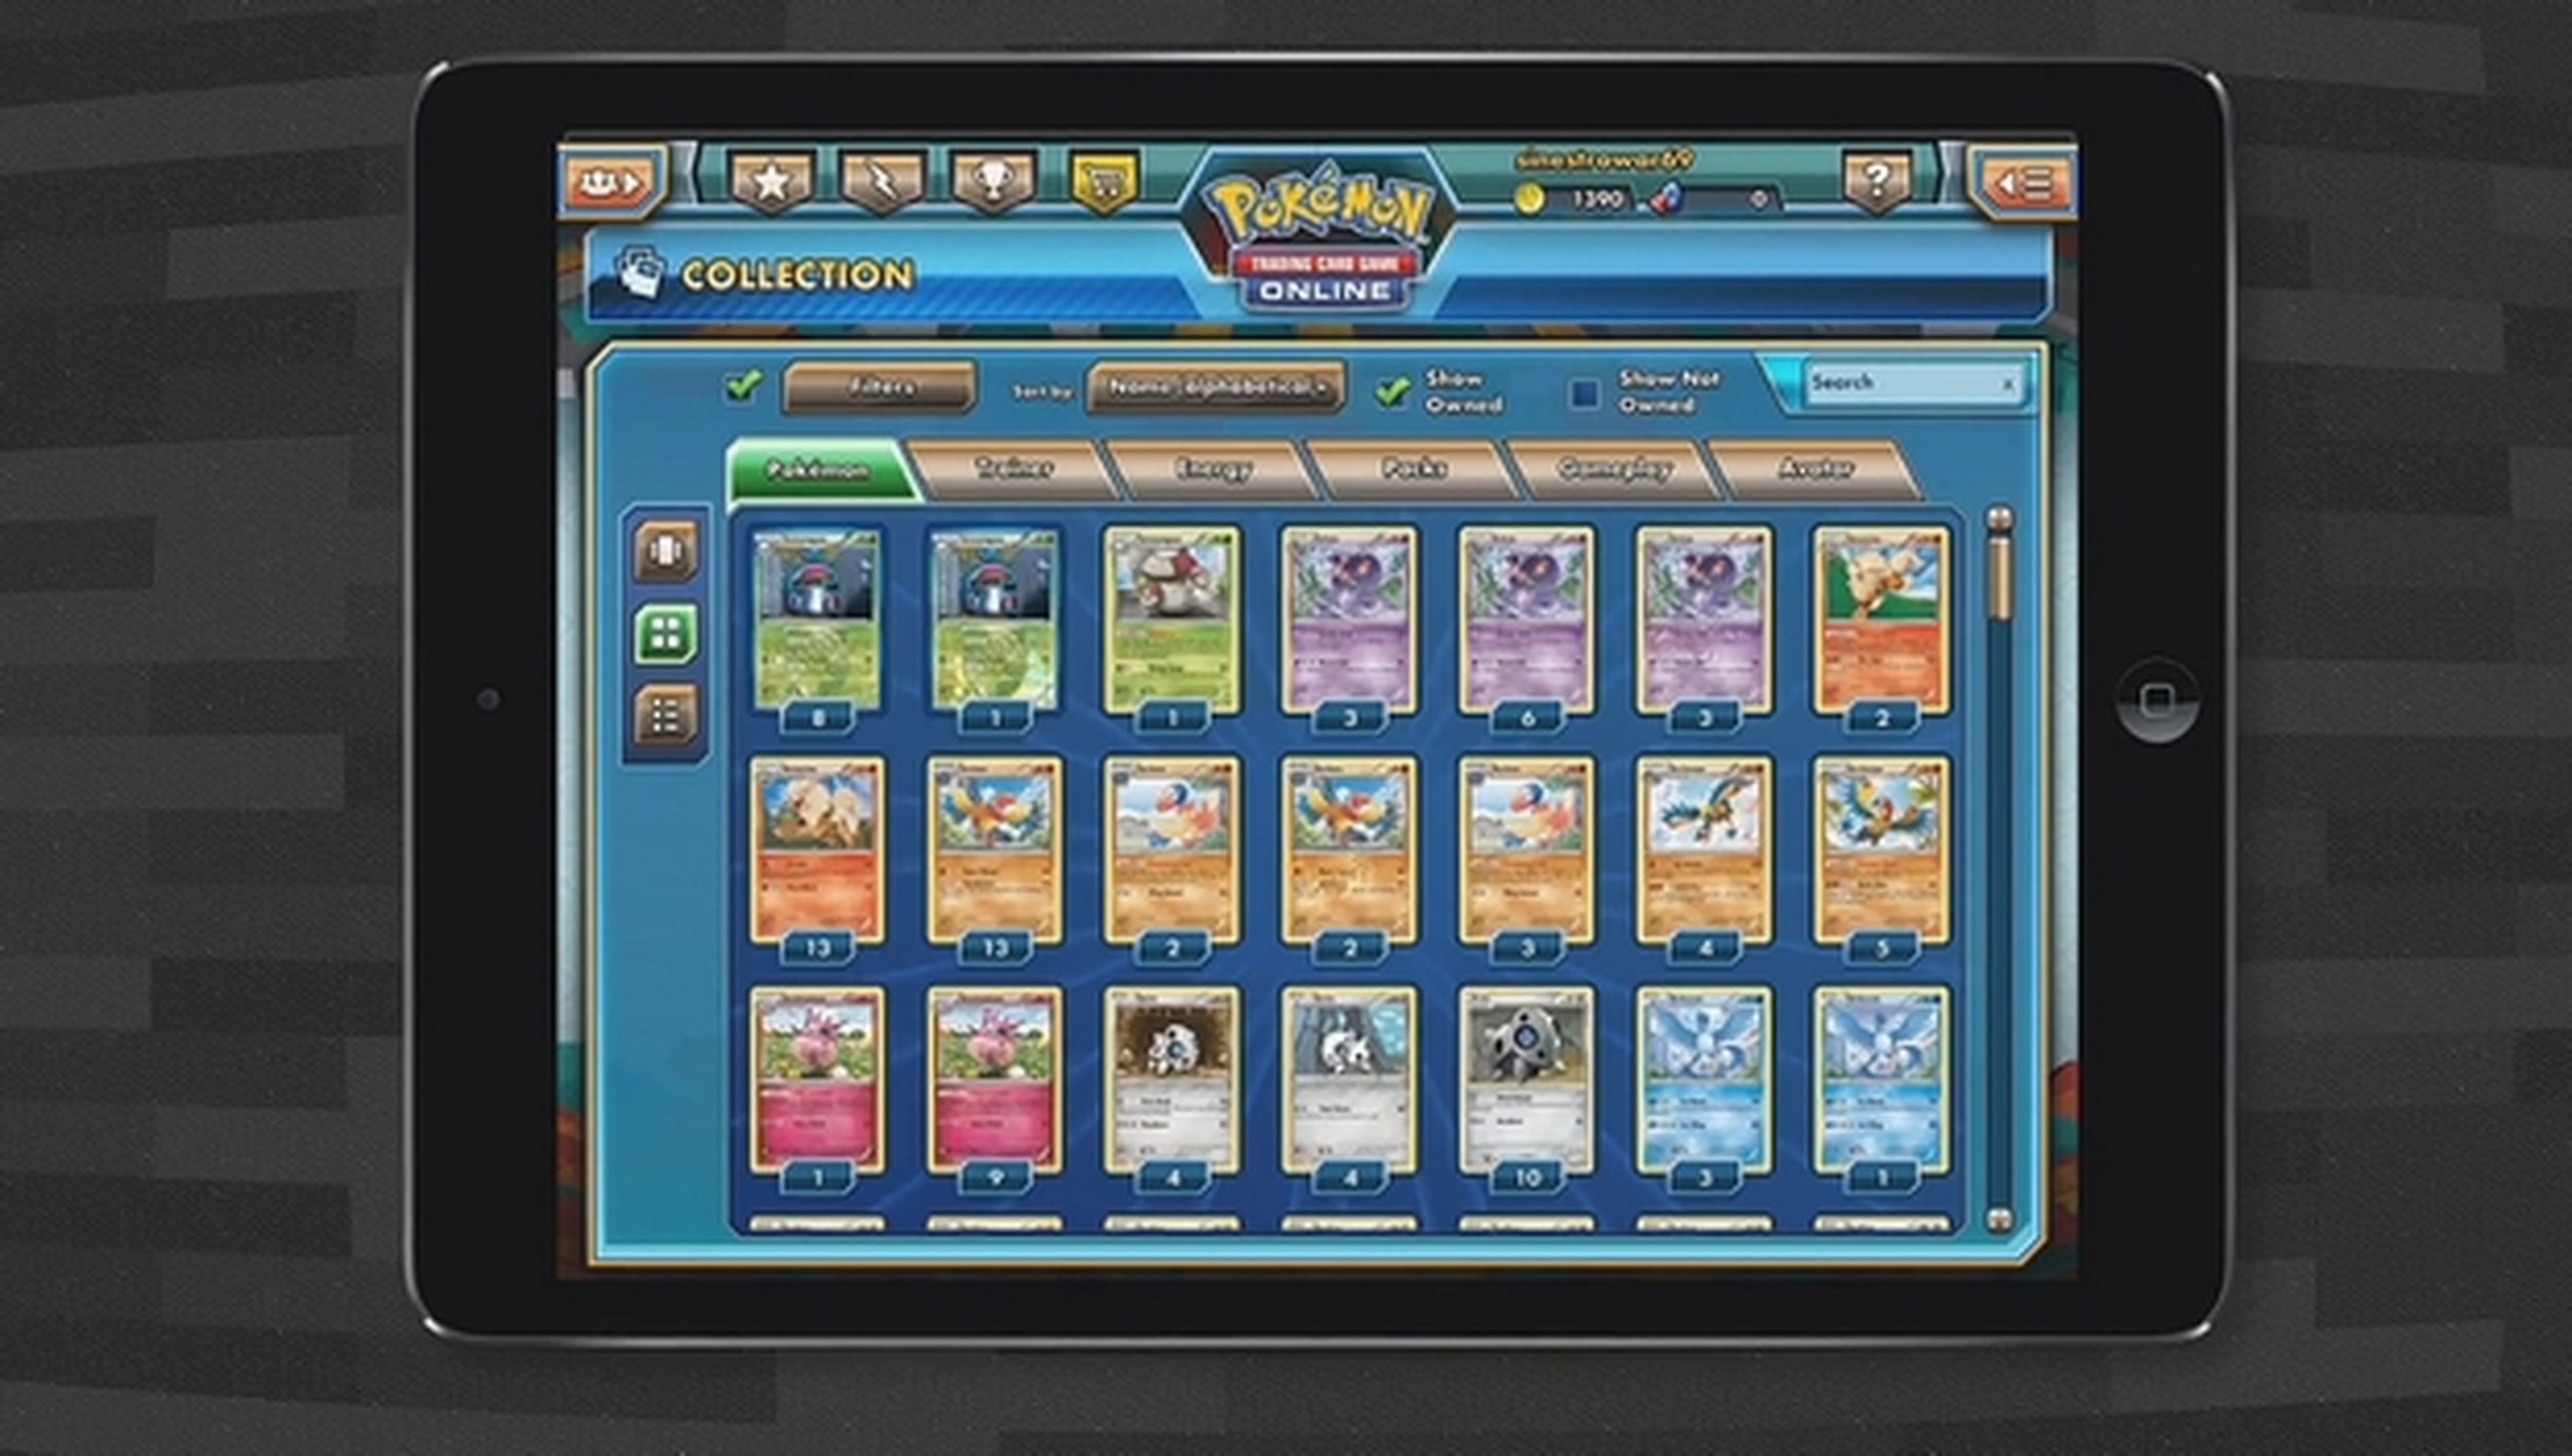 Juego de Cartas Coleccionables JCC Pokémon Online para iPad